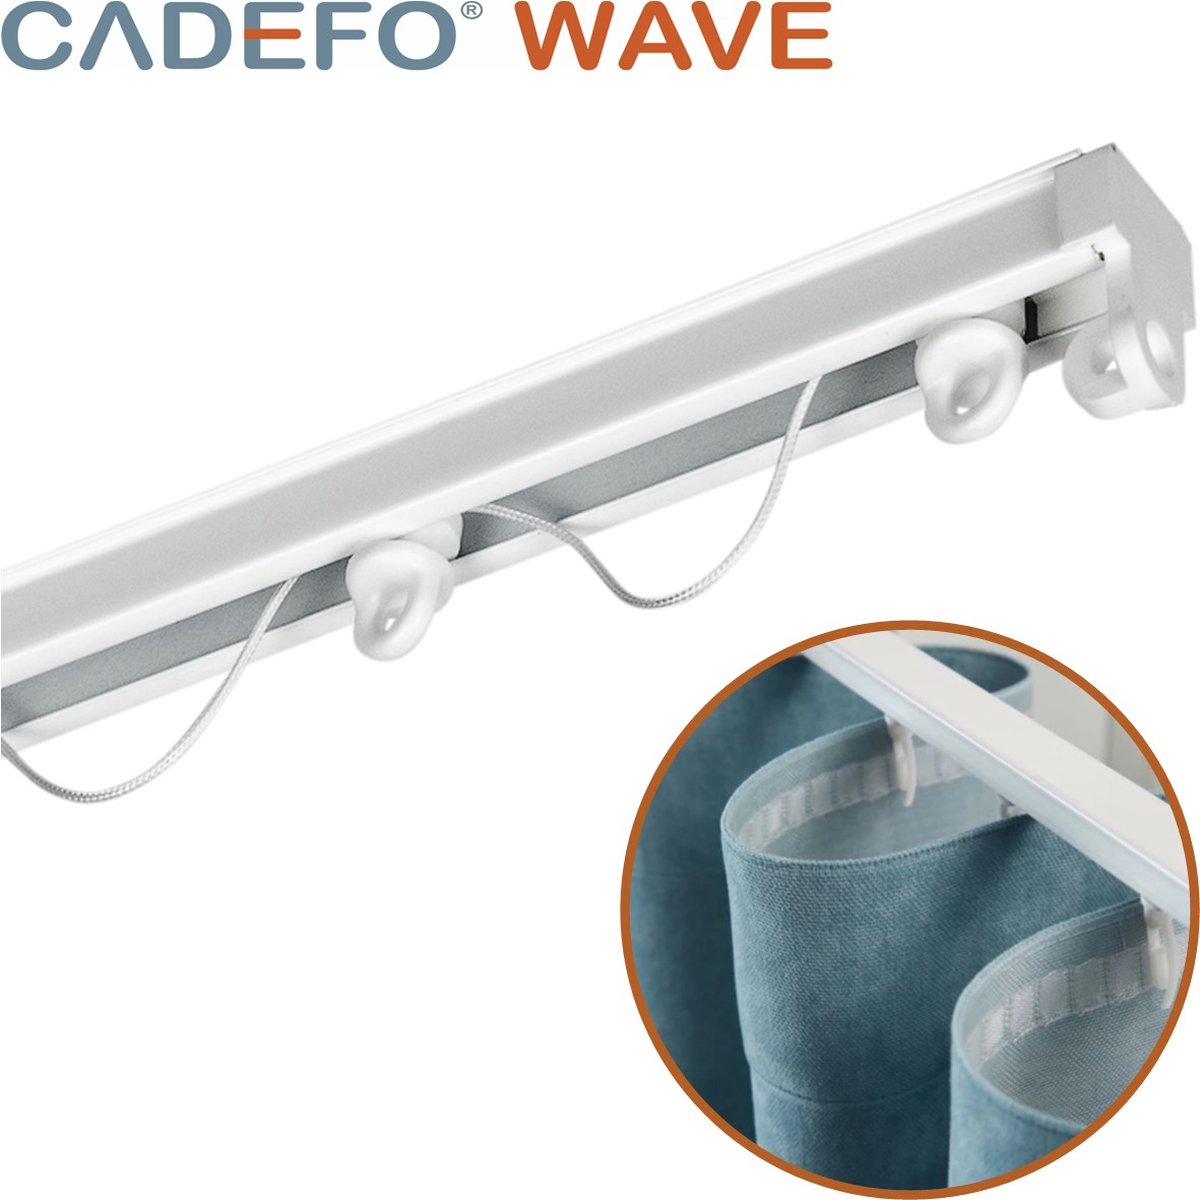 CADEFO WAVE (551 - 600 cm) Gordijnrails - Compleet op maat! - UIT 1 STUK - Leverbaar tot 6 meter - Plafondbevestiging - Lengte 569 cm